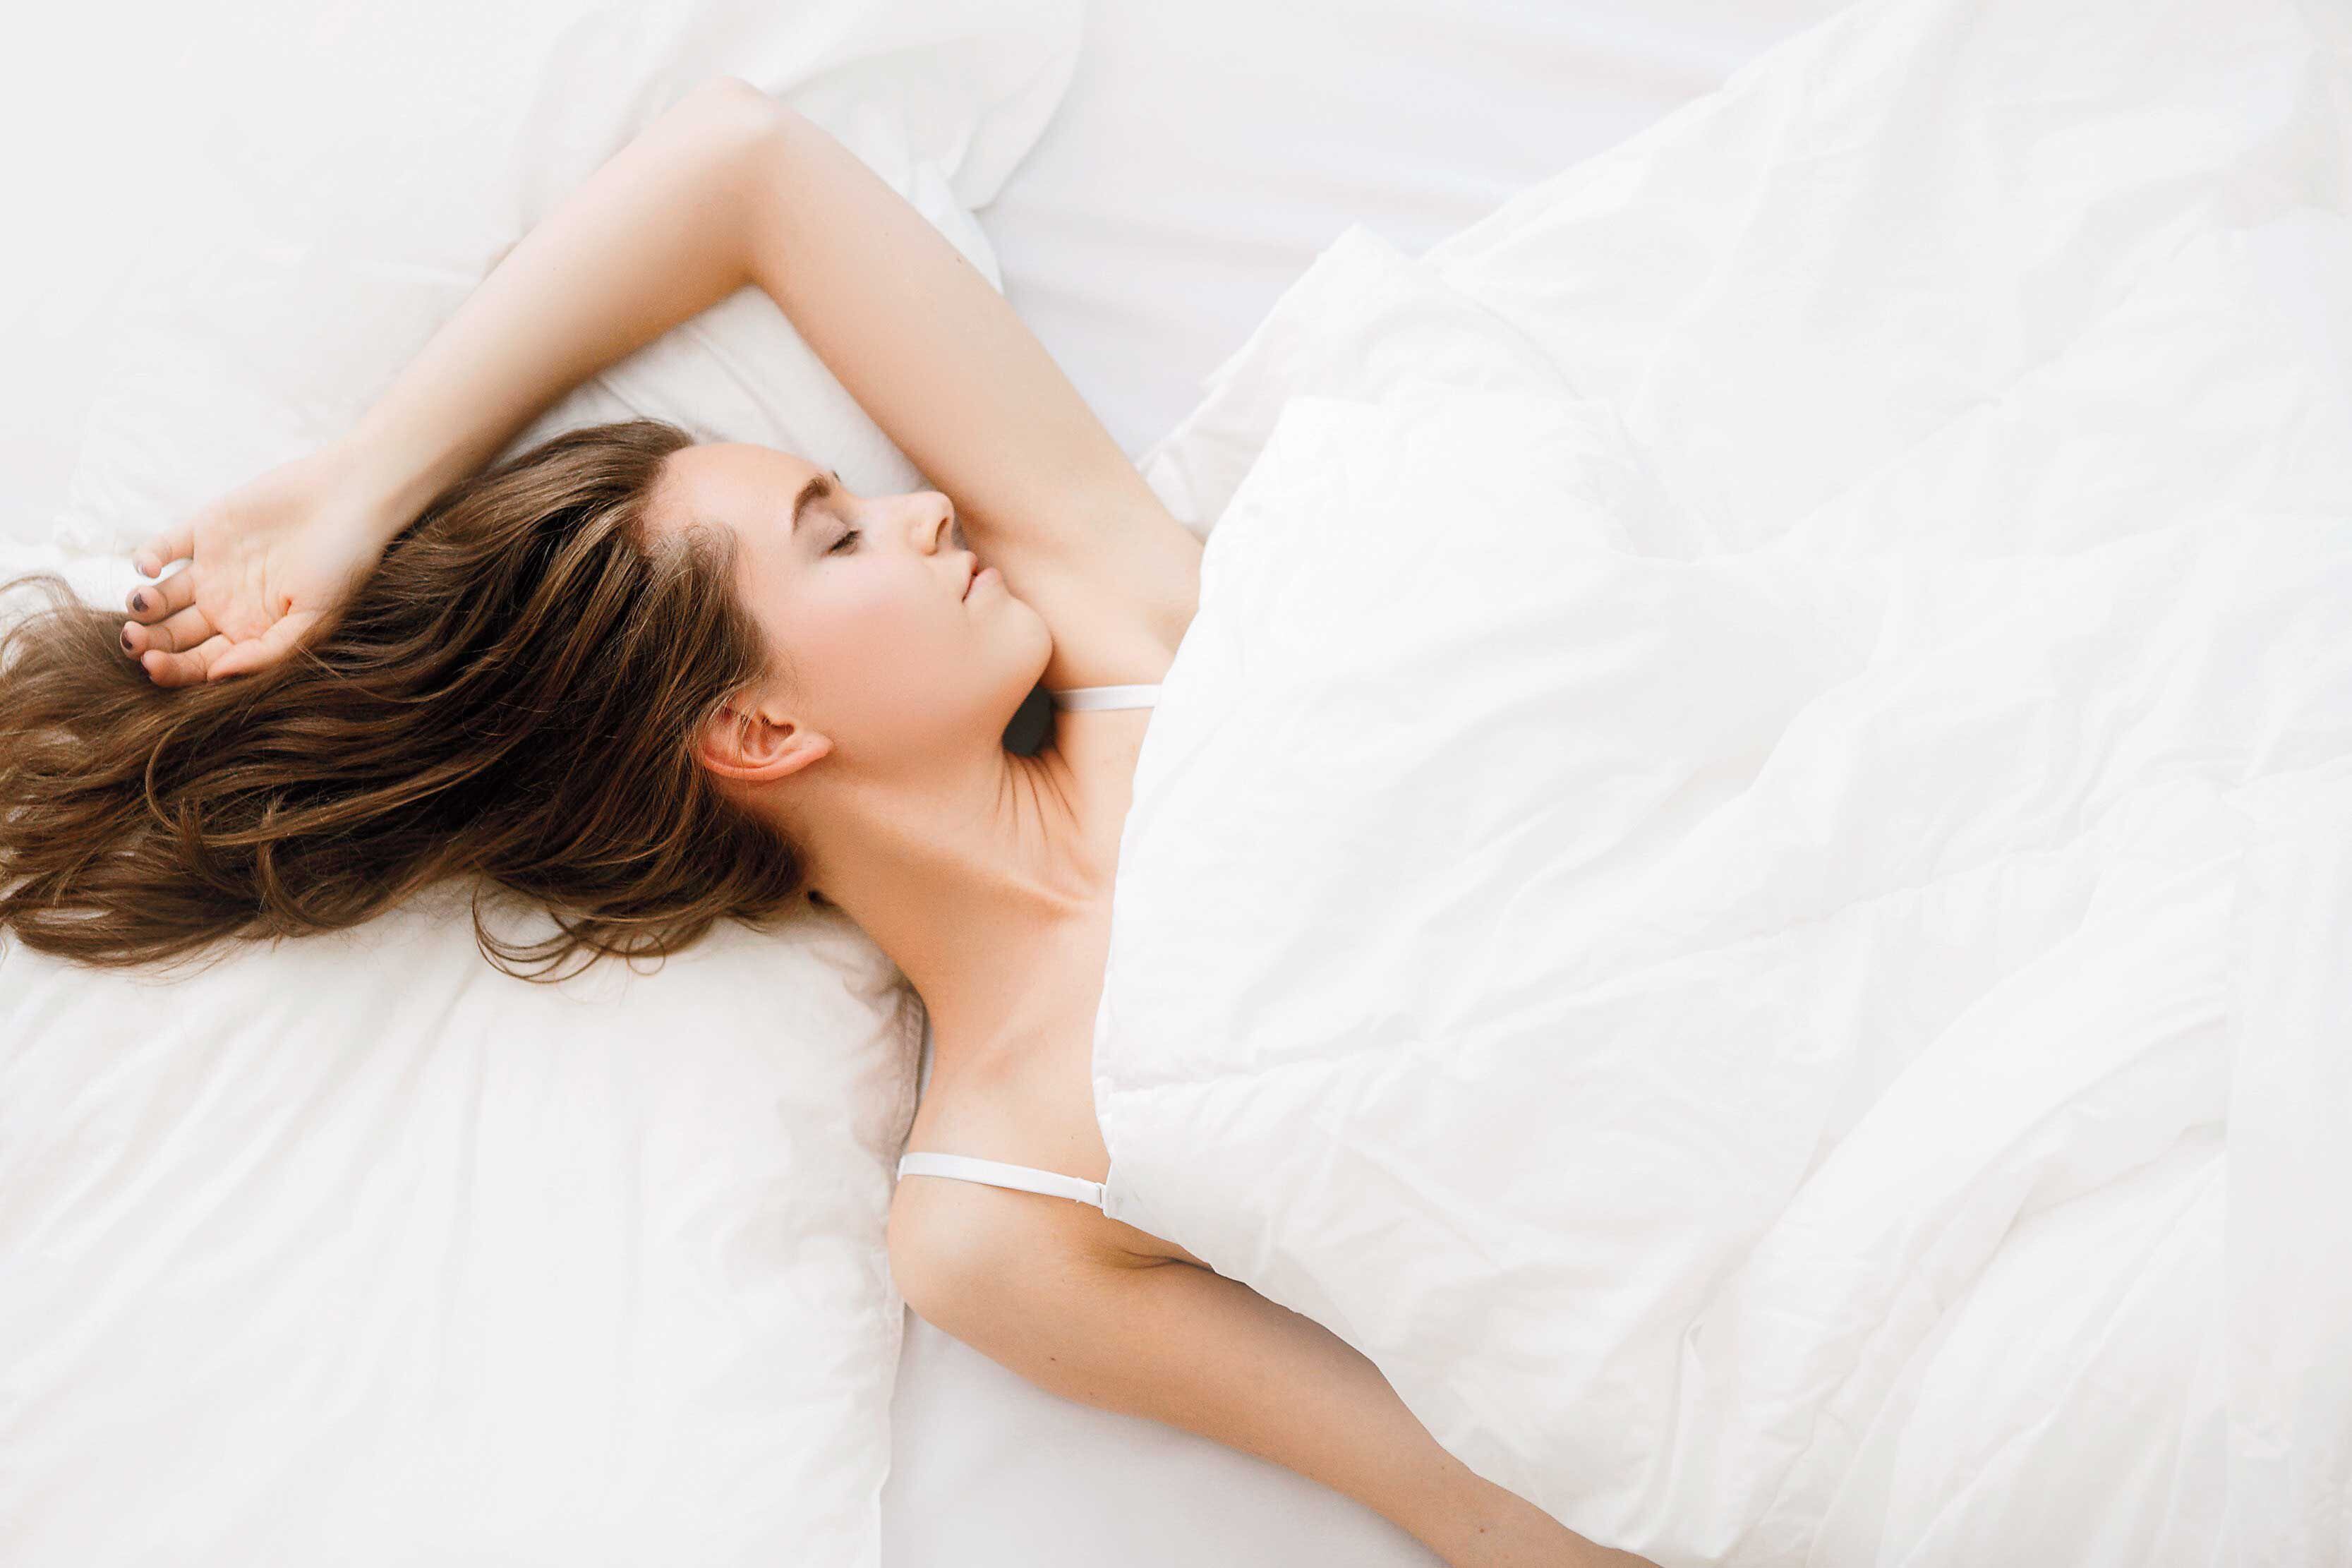 Dormir bien no solo ayuda a descansar. El sueño tiene una función reparadora de todo el organismo, principalmente del cerebro.